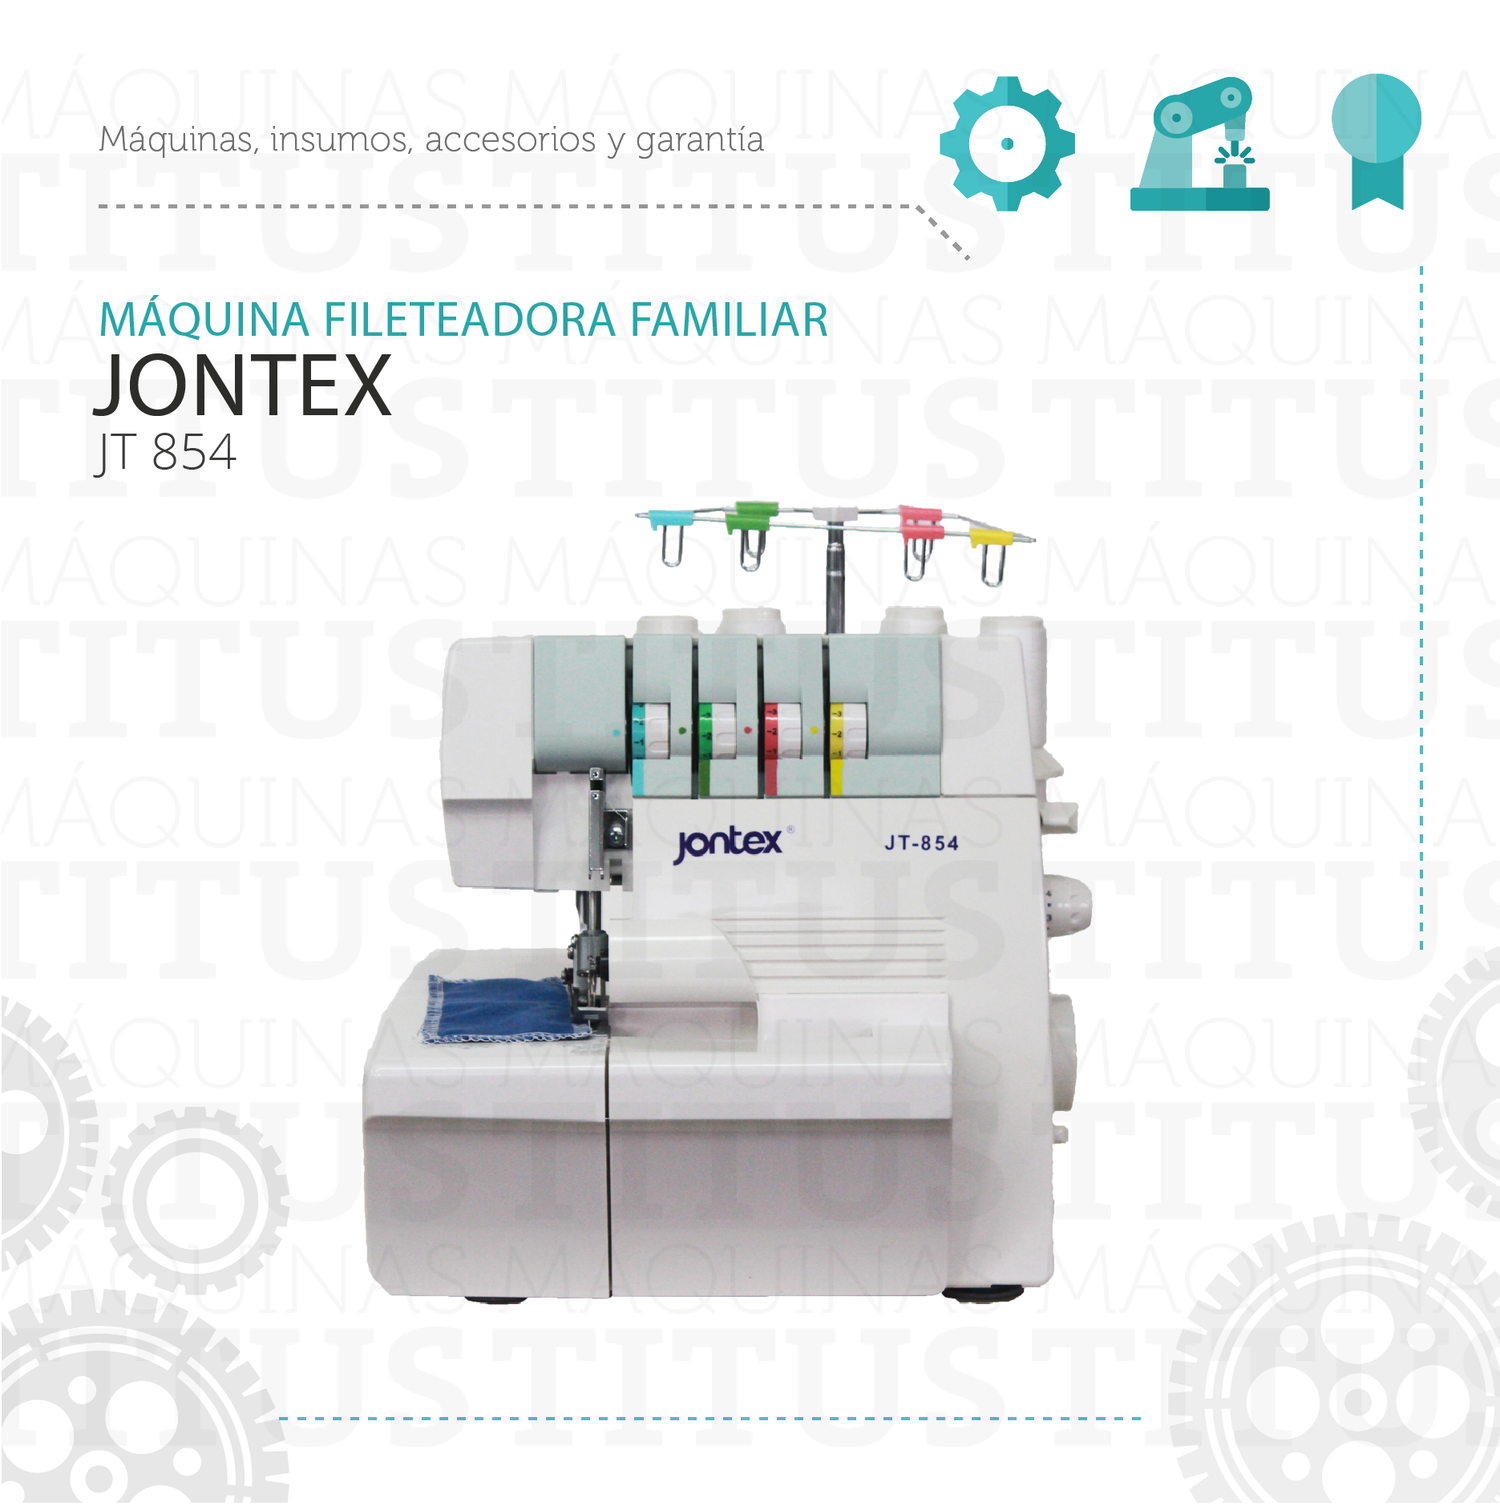 Fileteadora Familiar Jontex JT 854 Maquina De Coser - Commercio